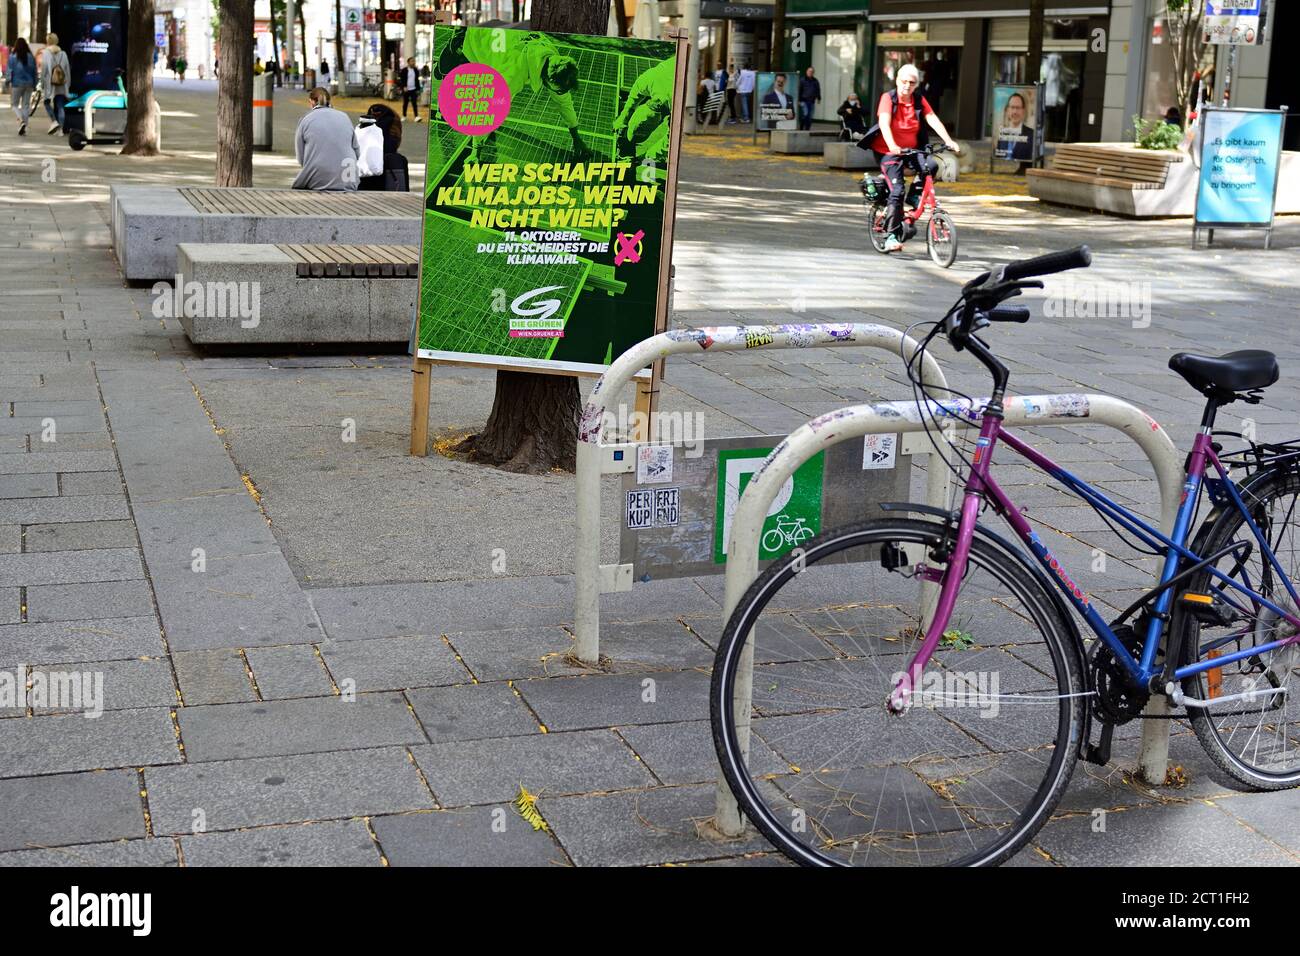 Wien, Österreich. Wahlplakate des Grünen Wiens für die Bürgermeisterwahlen am 11. Oktober 2020 in Wien. Aufschrift "Wer schafft Arbeitsplätze im Klimaschutz, wenn nicht Wien" Stockfoto